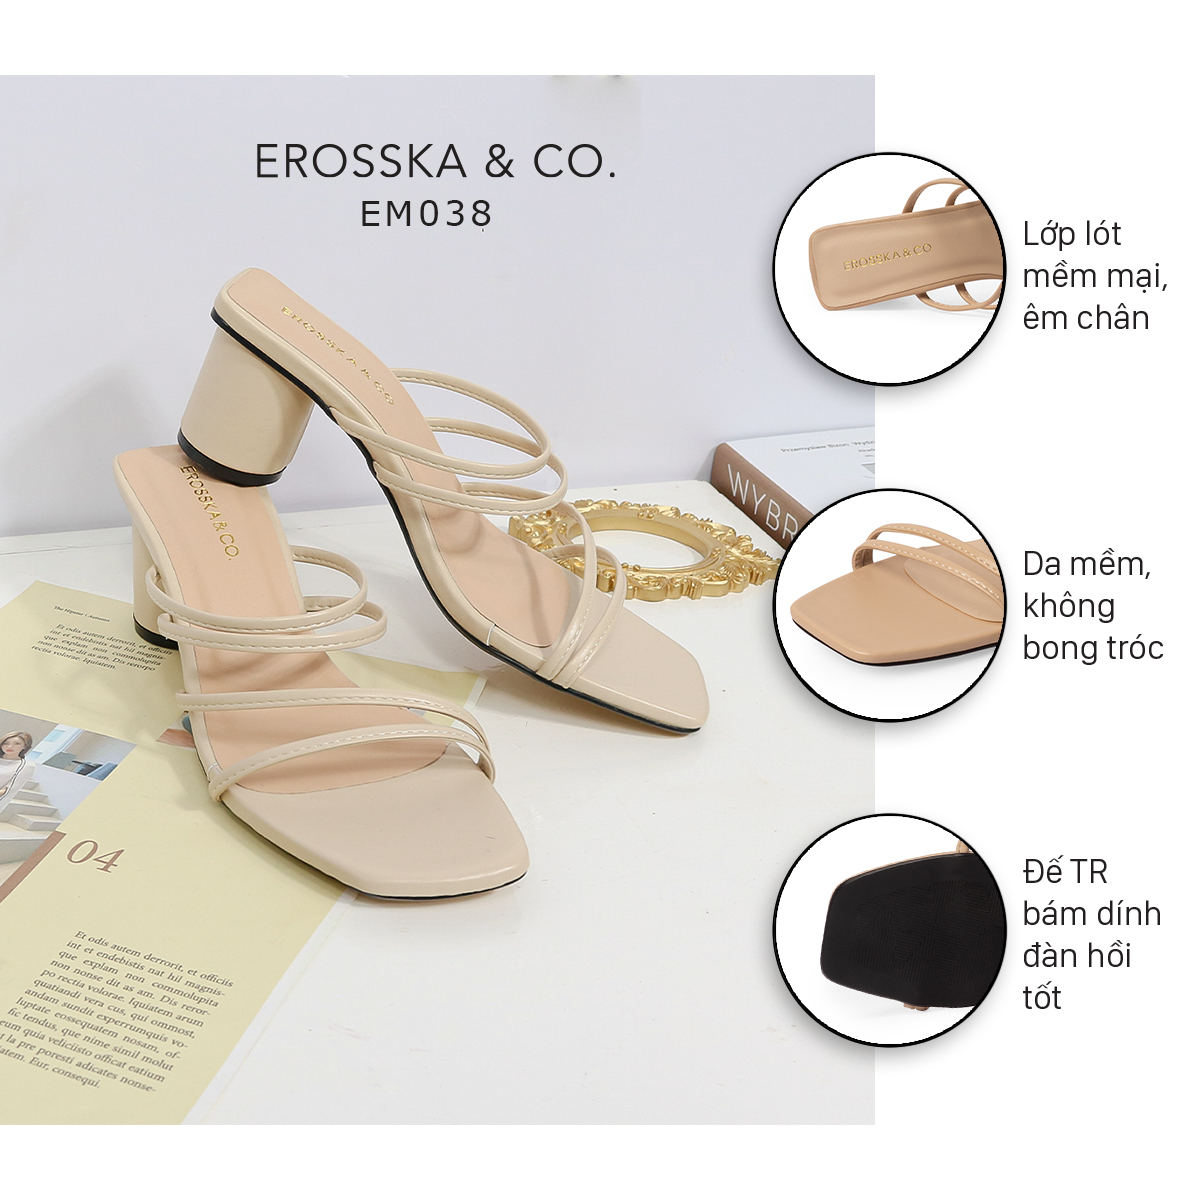 Dép cao gót thời trang Erosska mũi vuông gót tròn phối dây quai mảnh kiểu dáng đơn giản cao 6cm màu nude - EM038